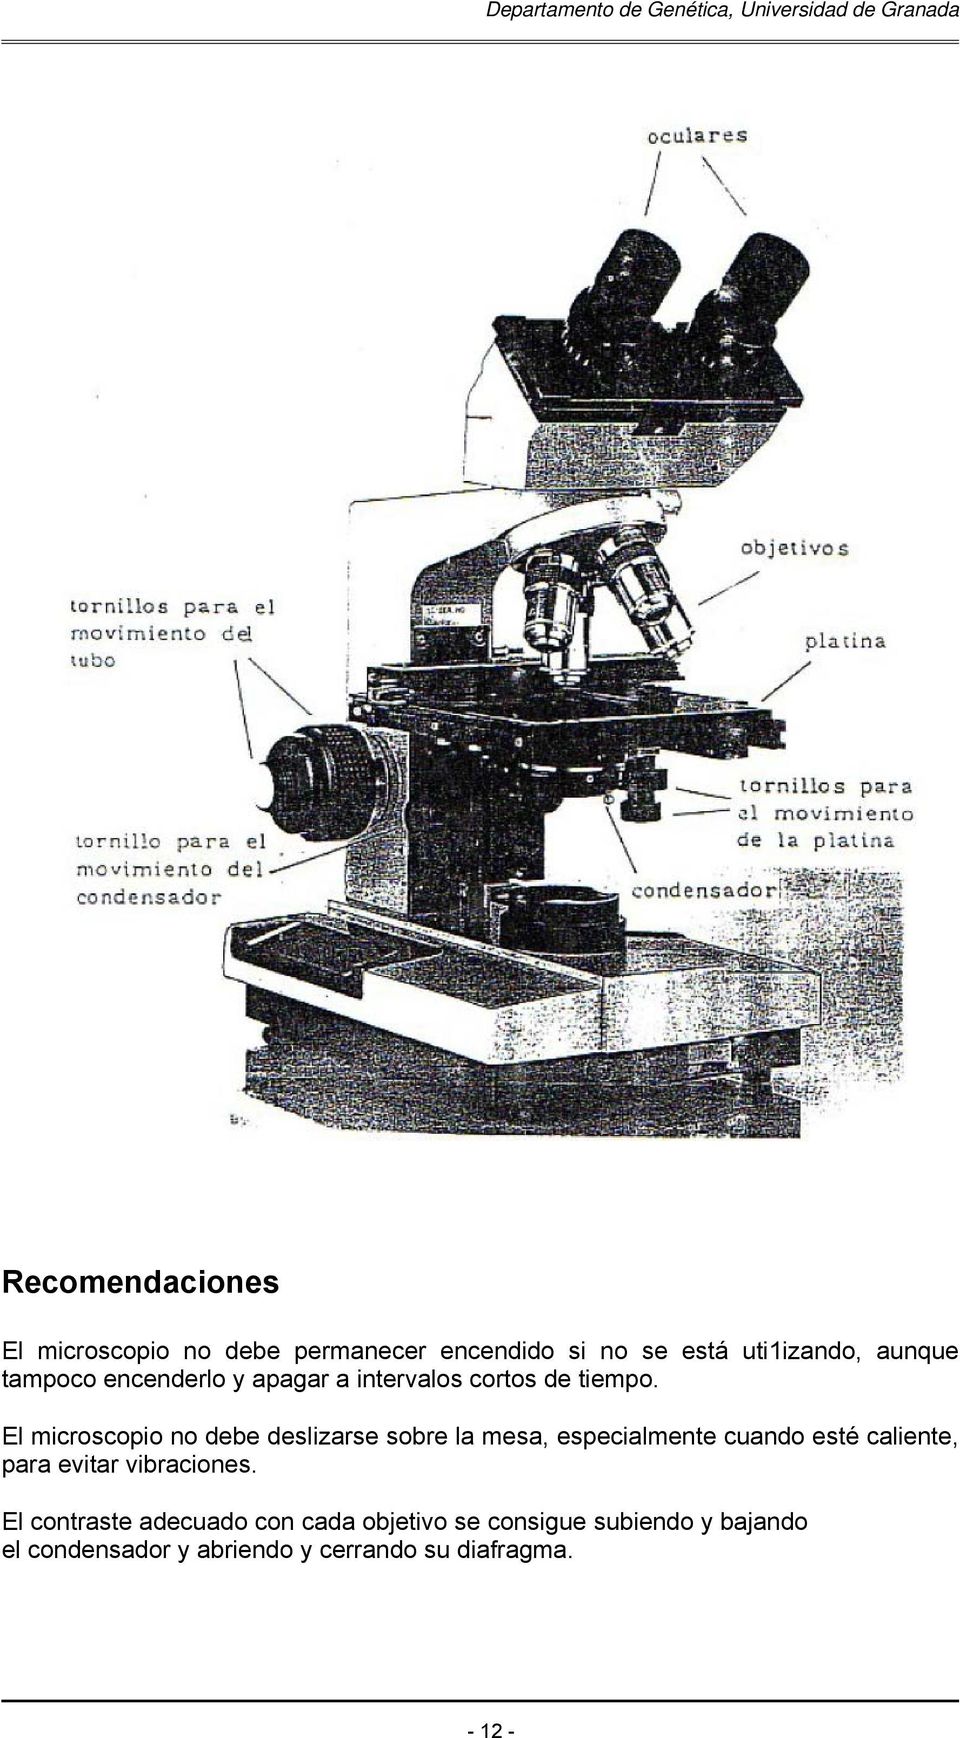 El microscopio no debe deslizarse sobre la mesa, especialmente cuando esté caliente, para evitar